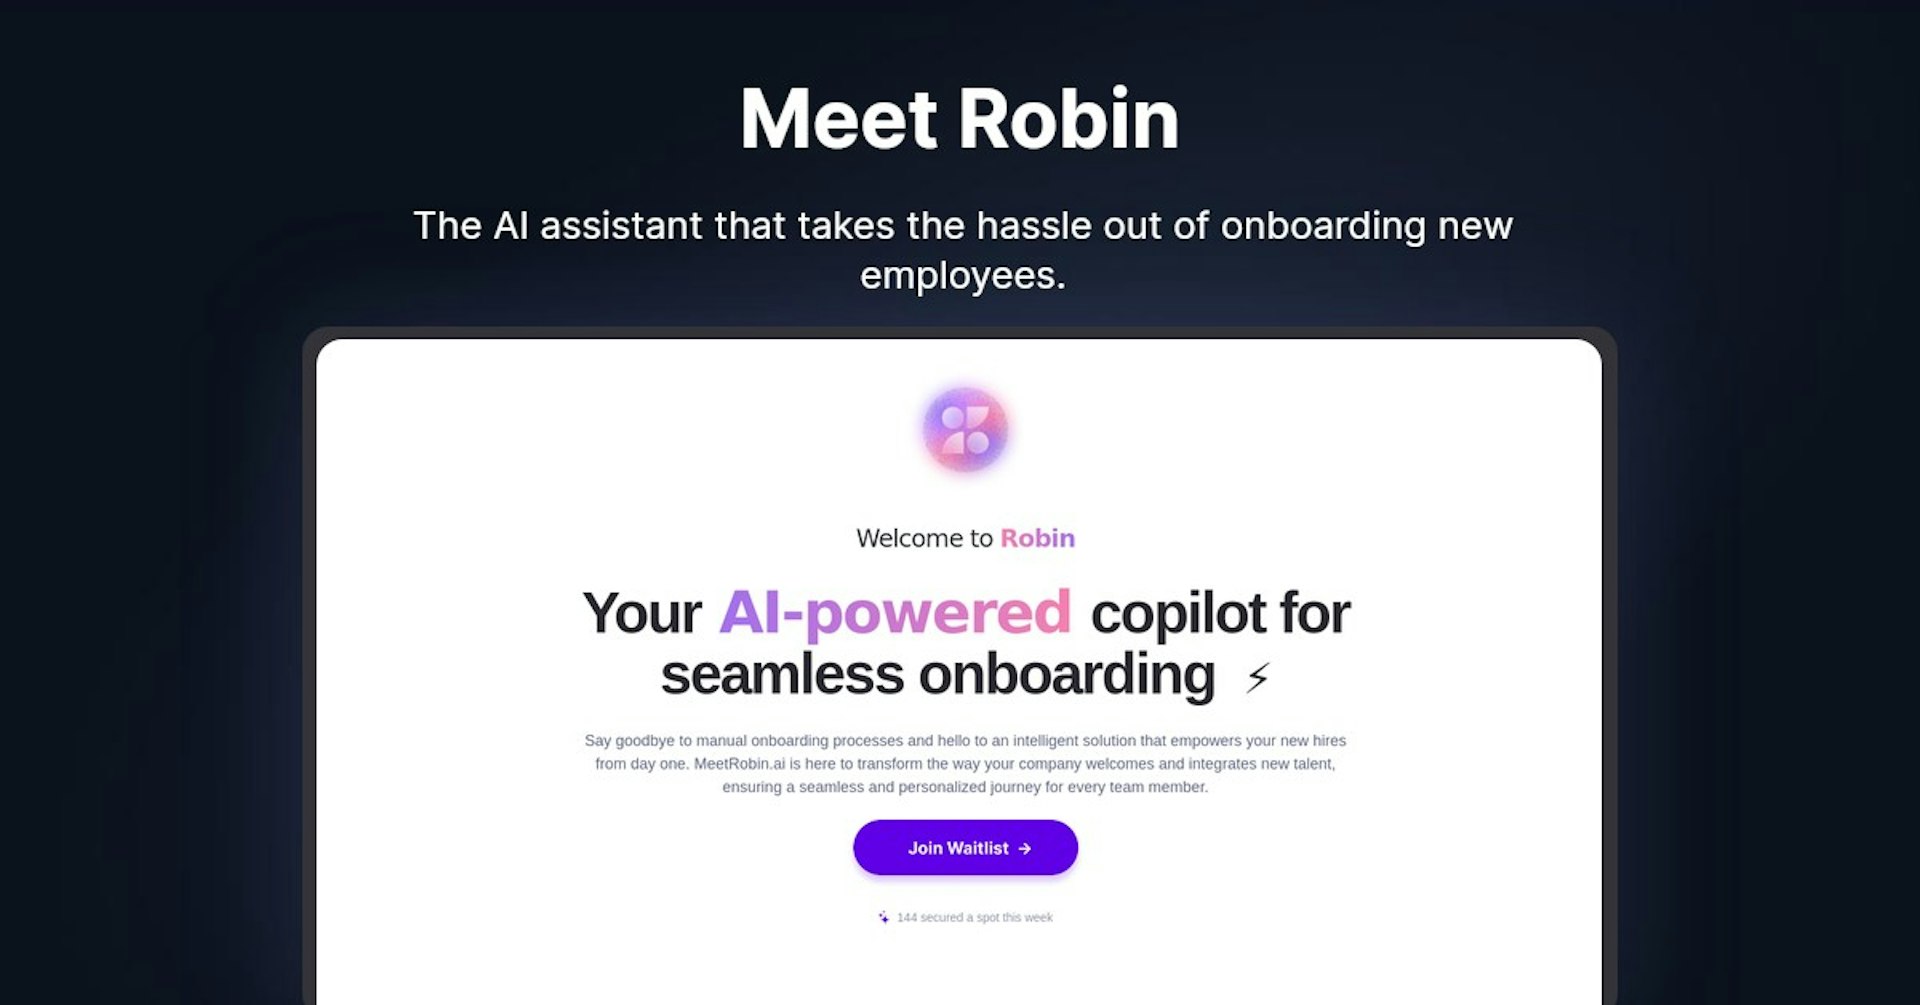 Meet Robin